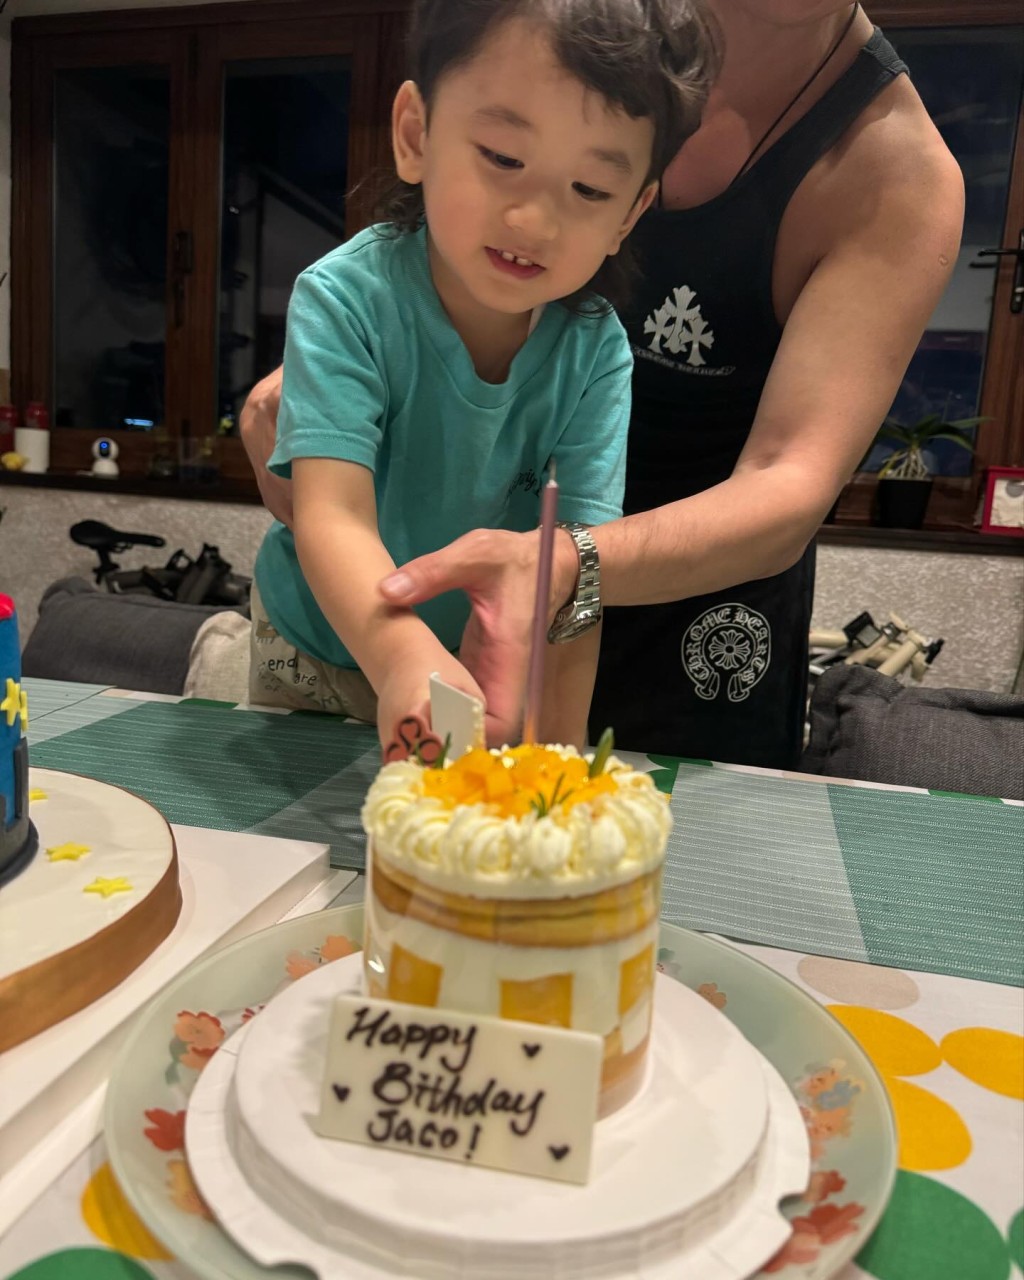 壽星仔Jaco開心切蛋糕。